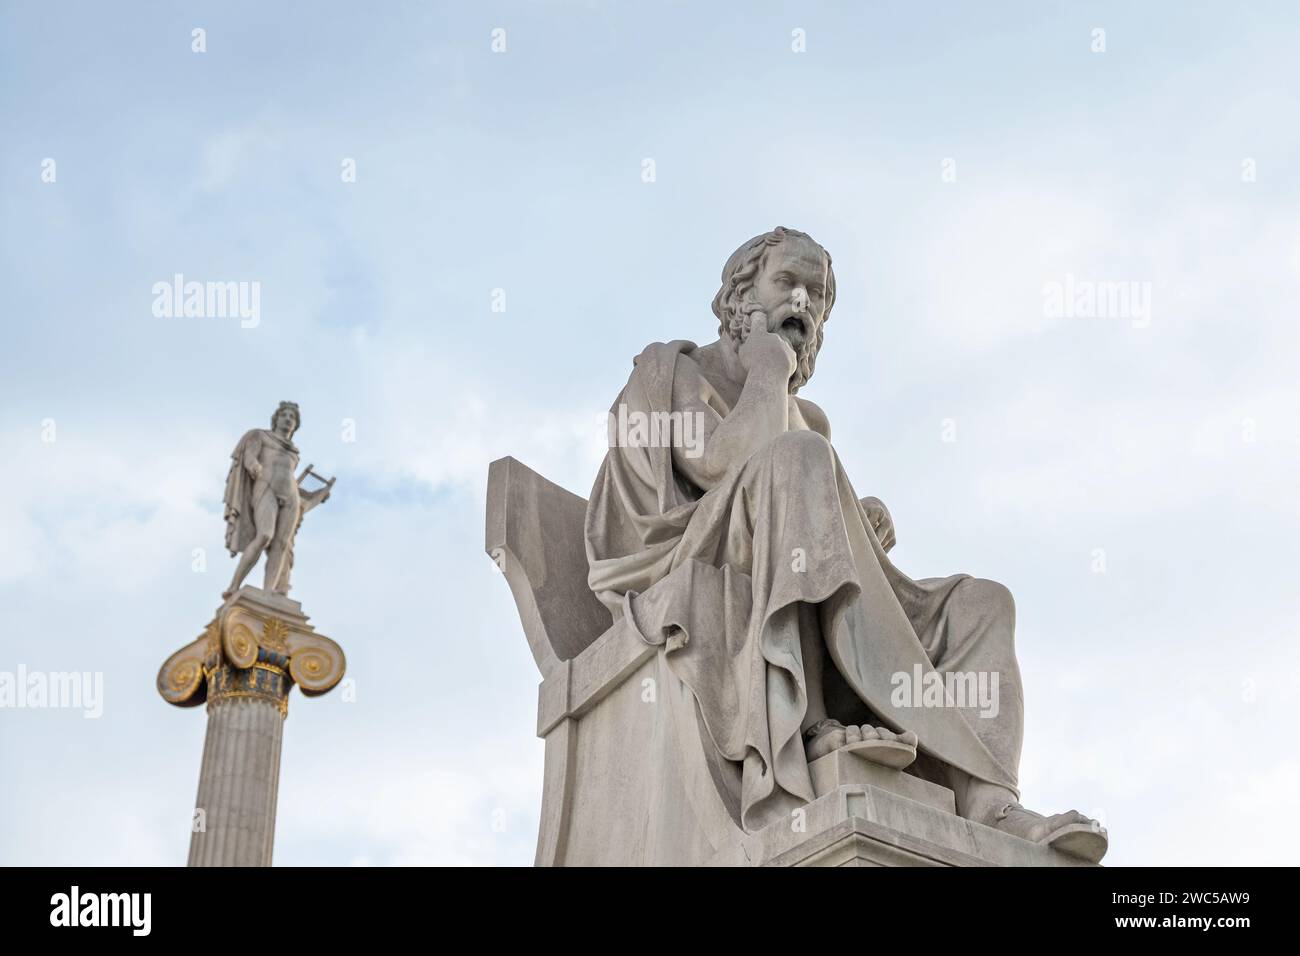 Colonne d'Apollon avec statue de Socrate de l'Académie d'Athènes, Grèce. Mise au point sélective. Focus sur statue philosophe. Art grec ancien Populaire Banque D'Images